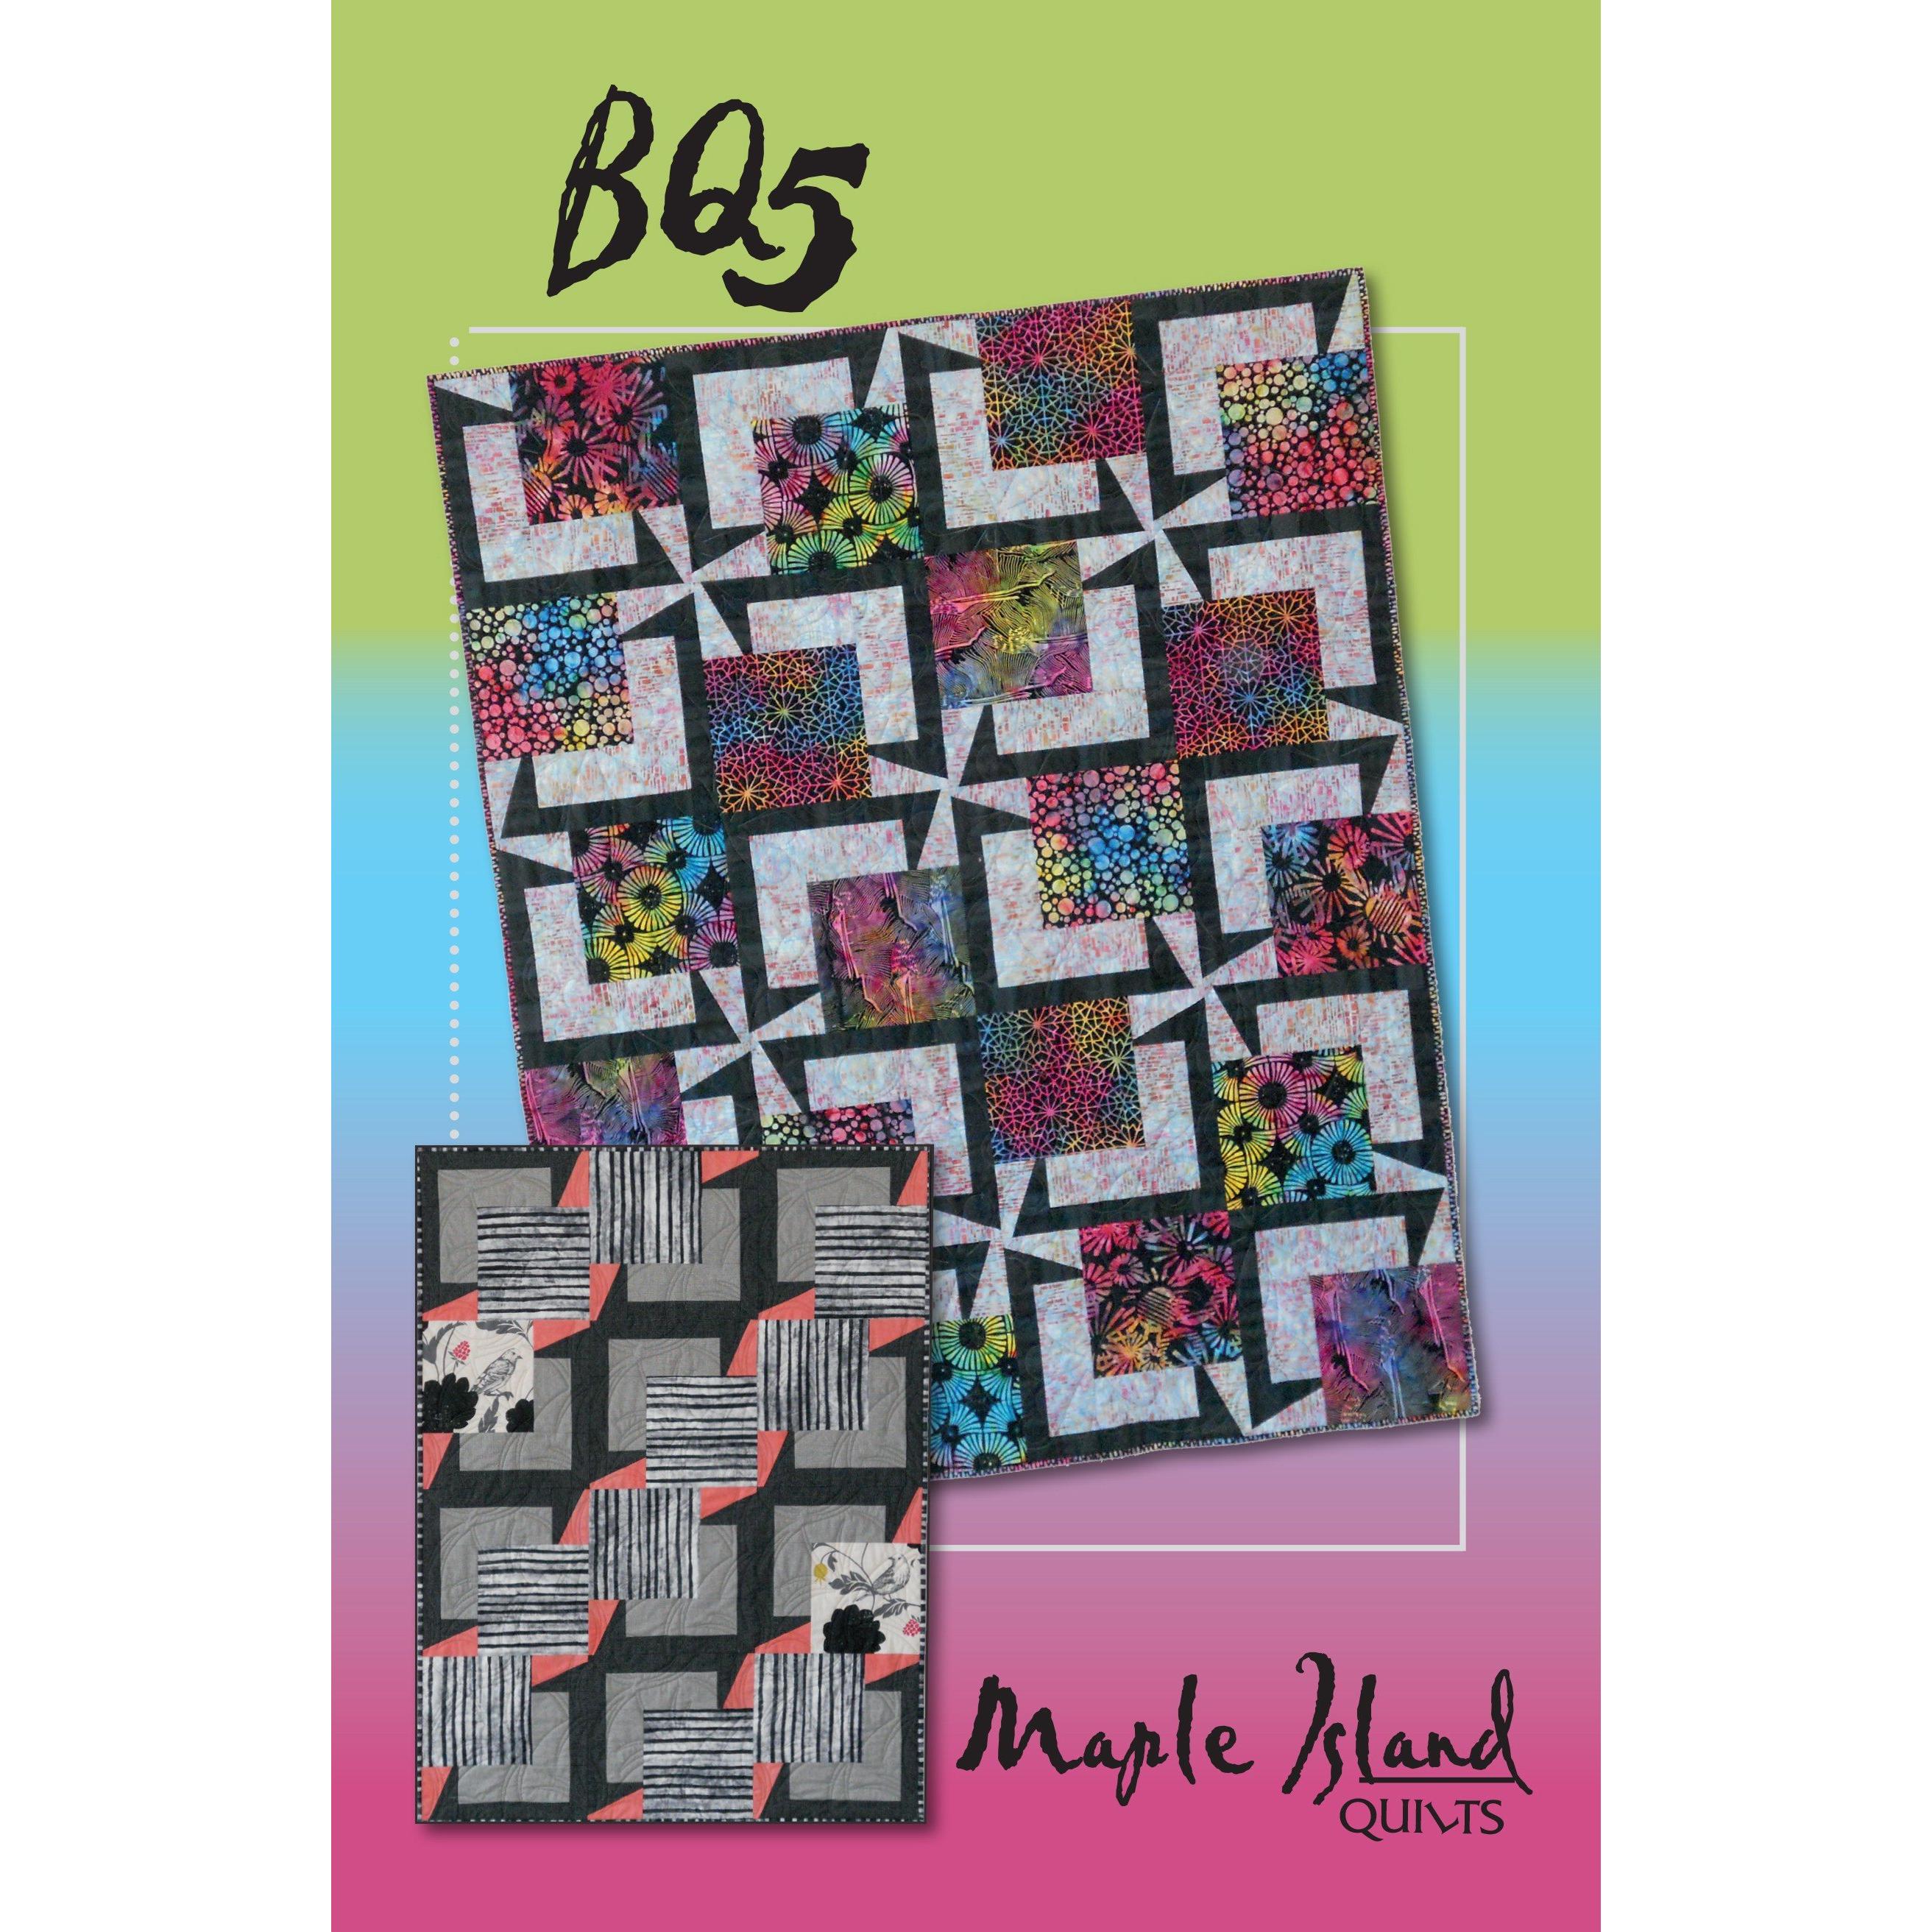 BQ5 Quilt Pattern